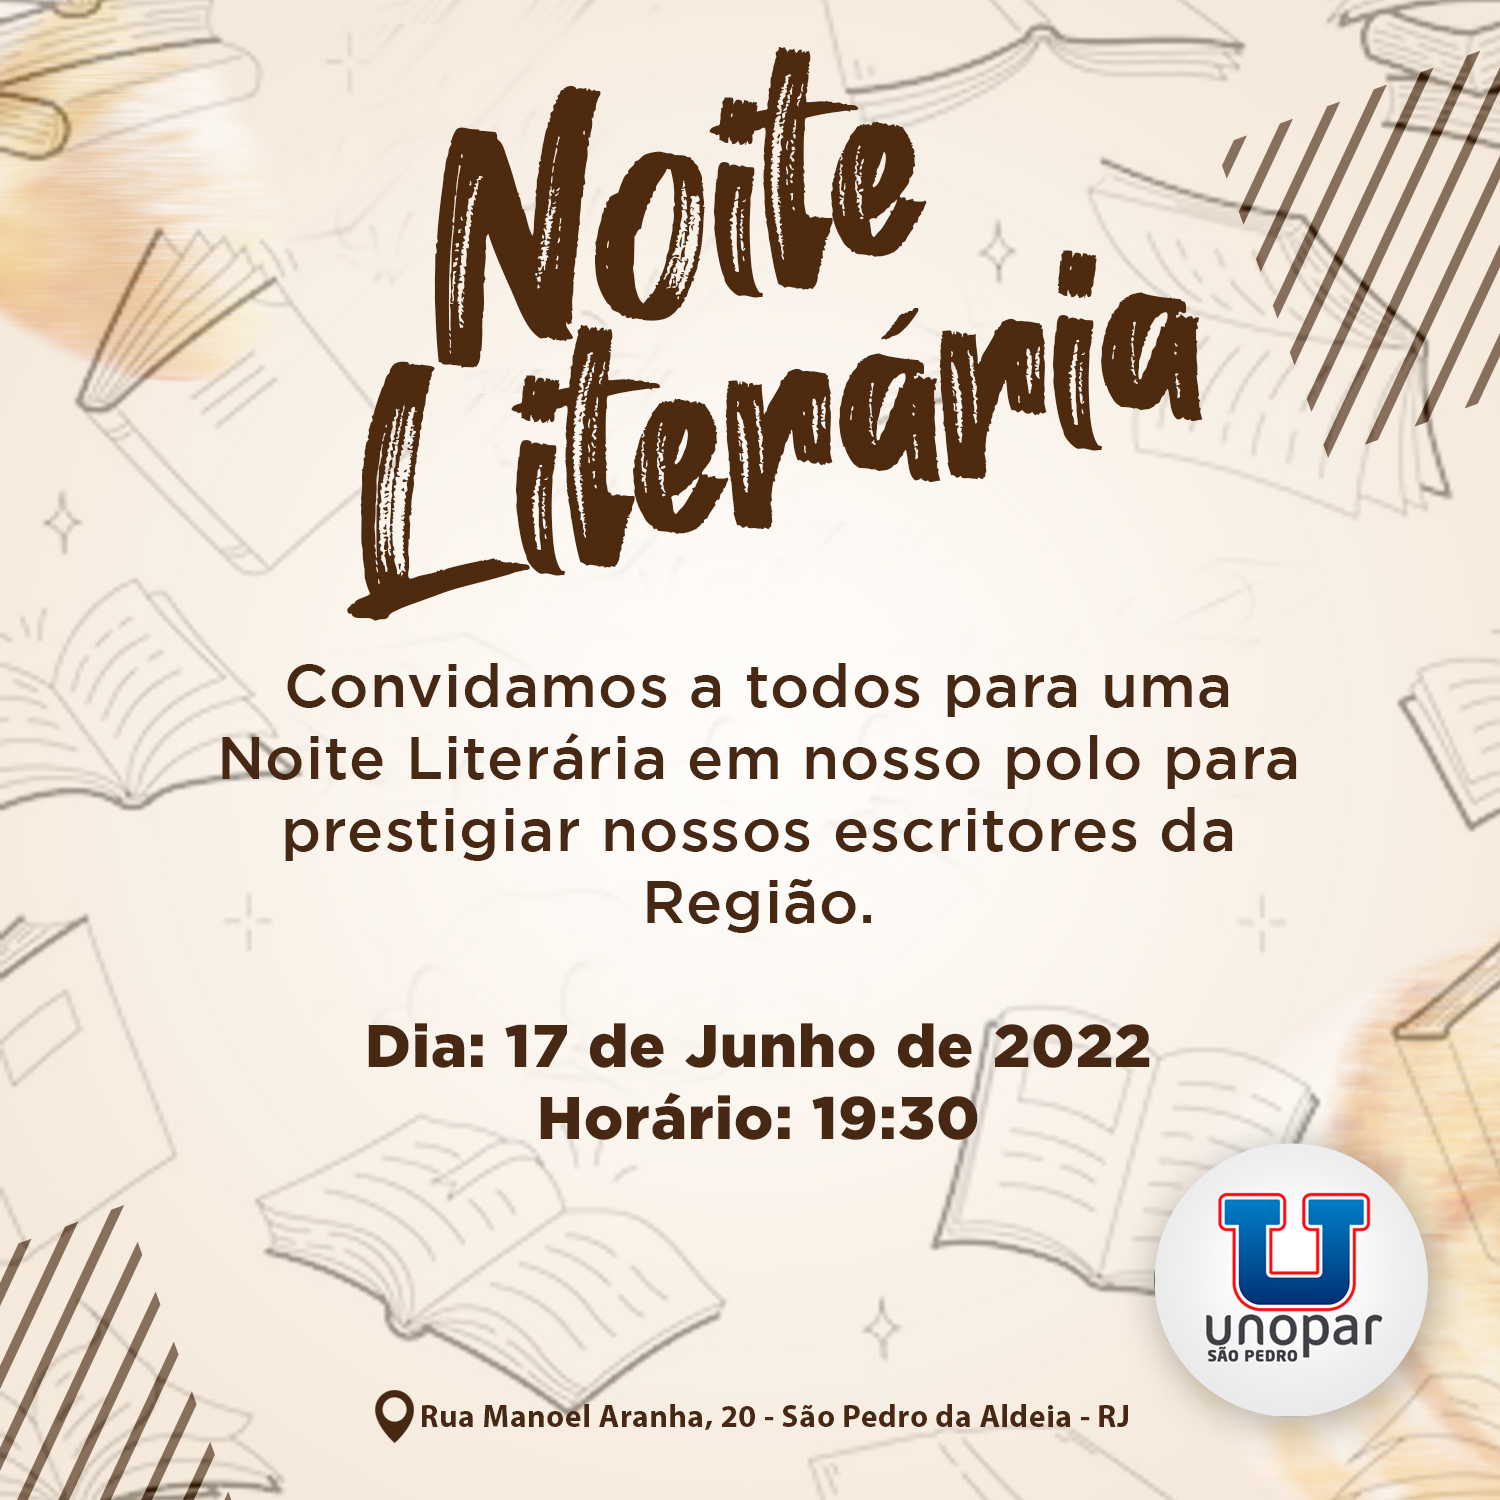 Vem aí a 2ª edição da Noite Literária no polo da UNOPAR em São Pedro da Aldeia